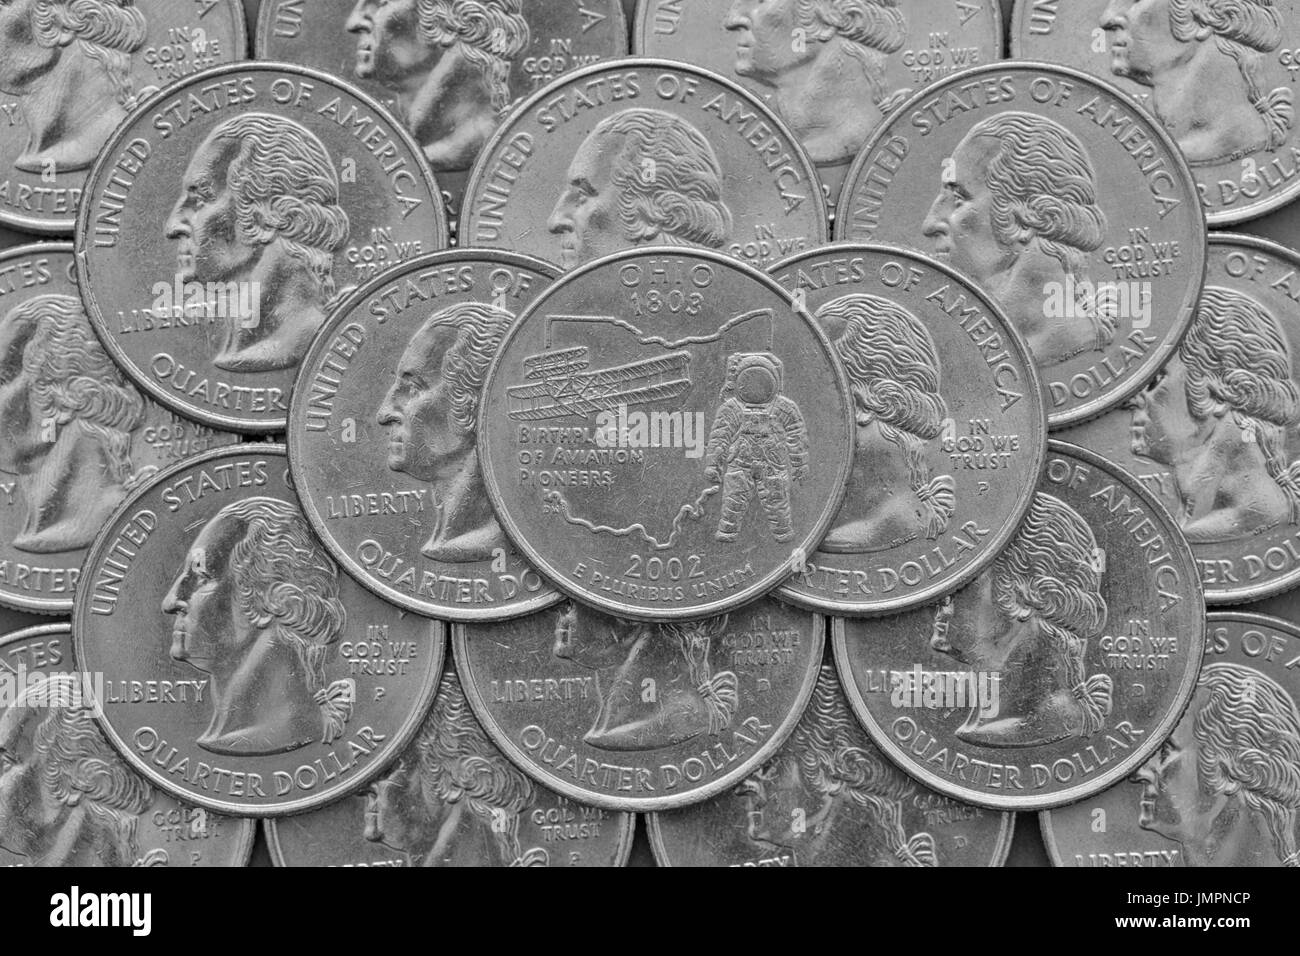 Ohio State et pièces d'USA.Pile du trimestre nous des pièces avec George Washington et sur le dessus un quart de l'état de l'Ohio. Banque D'Images